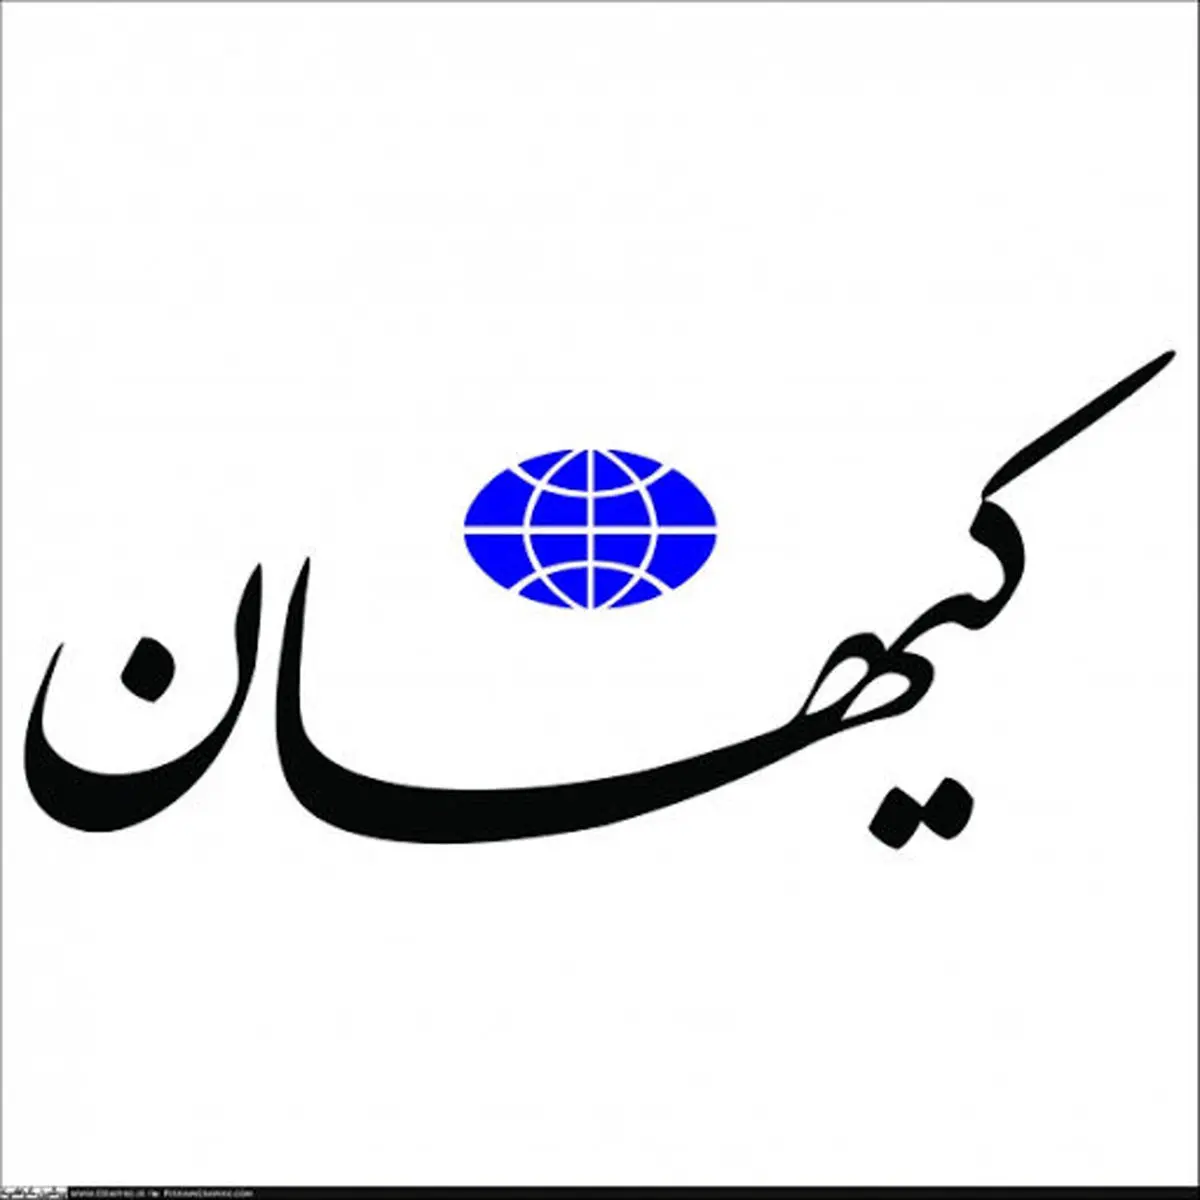  ارائه راهکار کیهان به وزیرجدید آموزش و پرورش